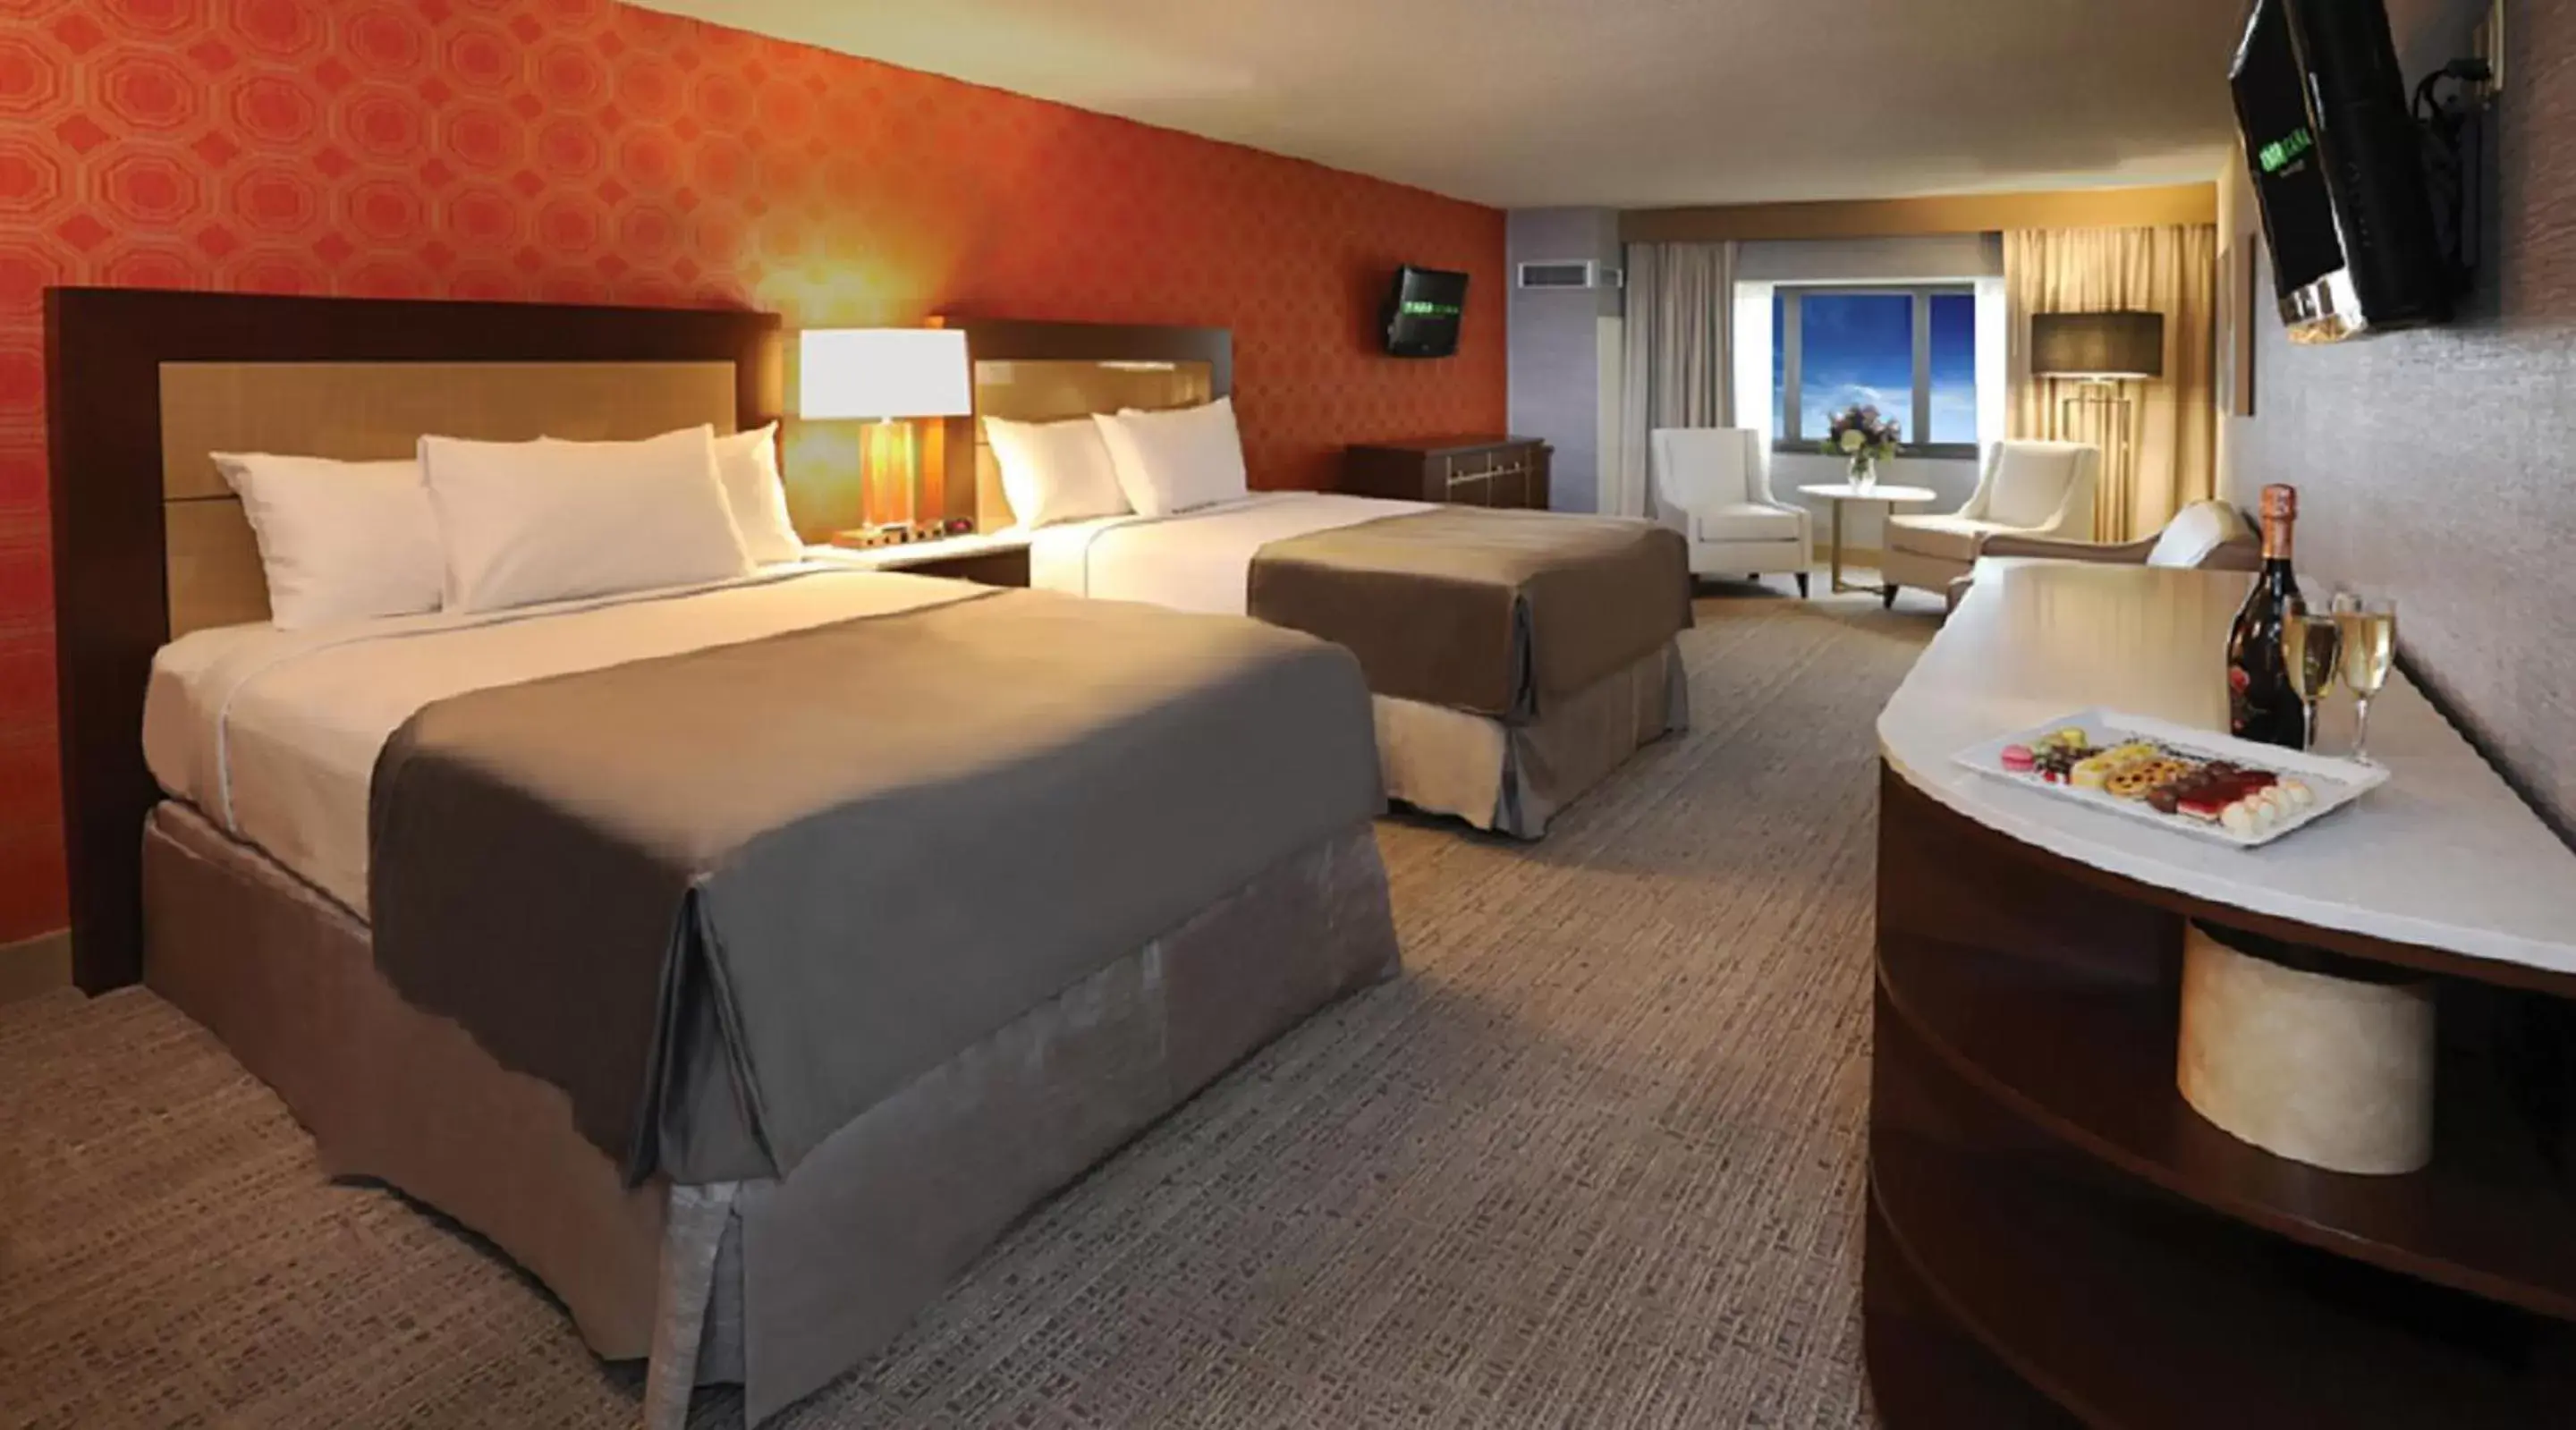 Bedroom in Tropicana Casino and Resort